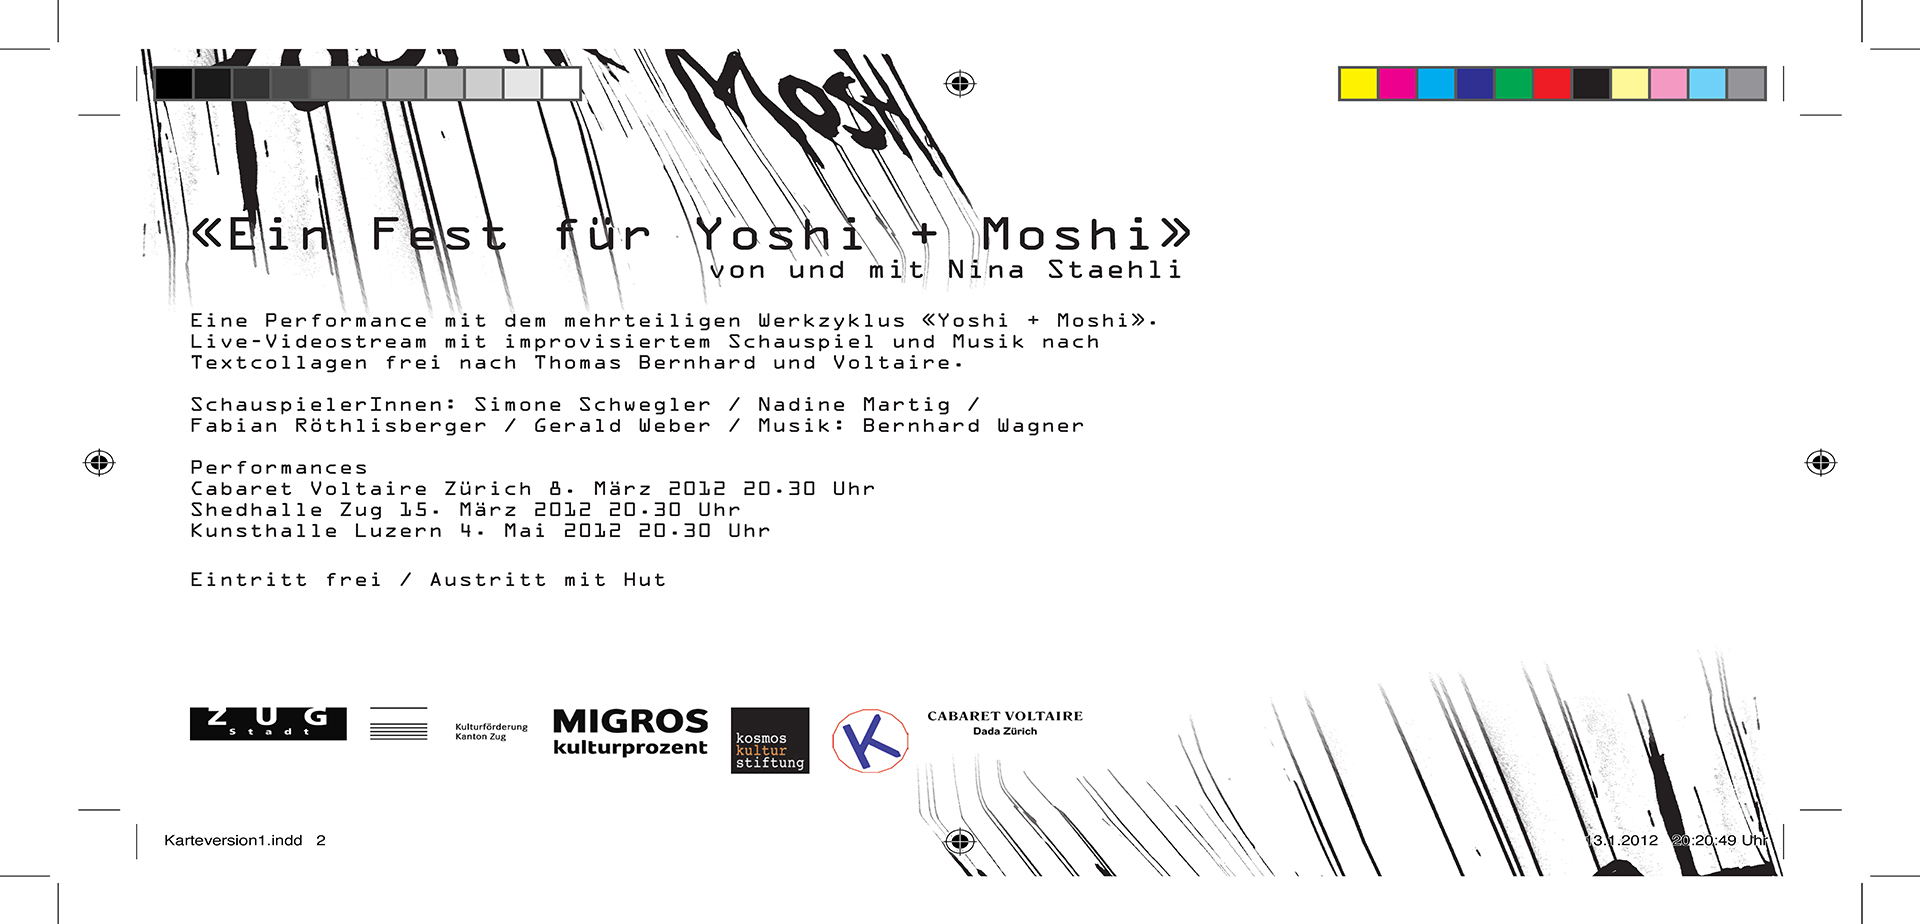 Nina Staehli Una festa per Yoshi e Moshi